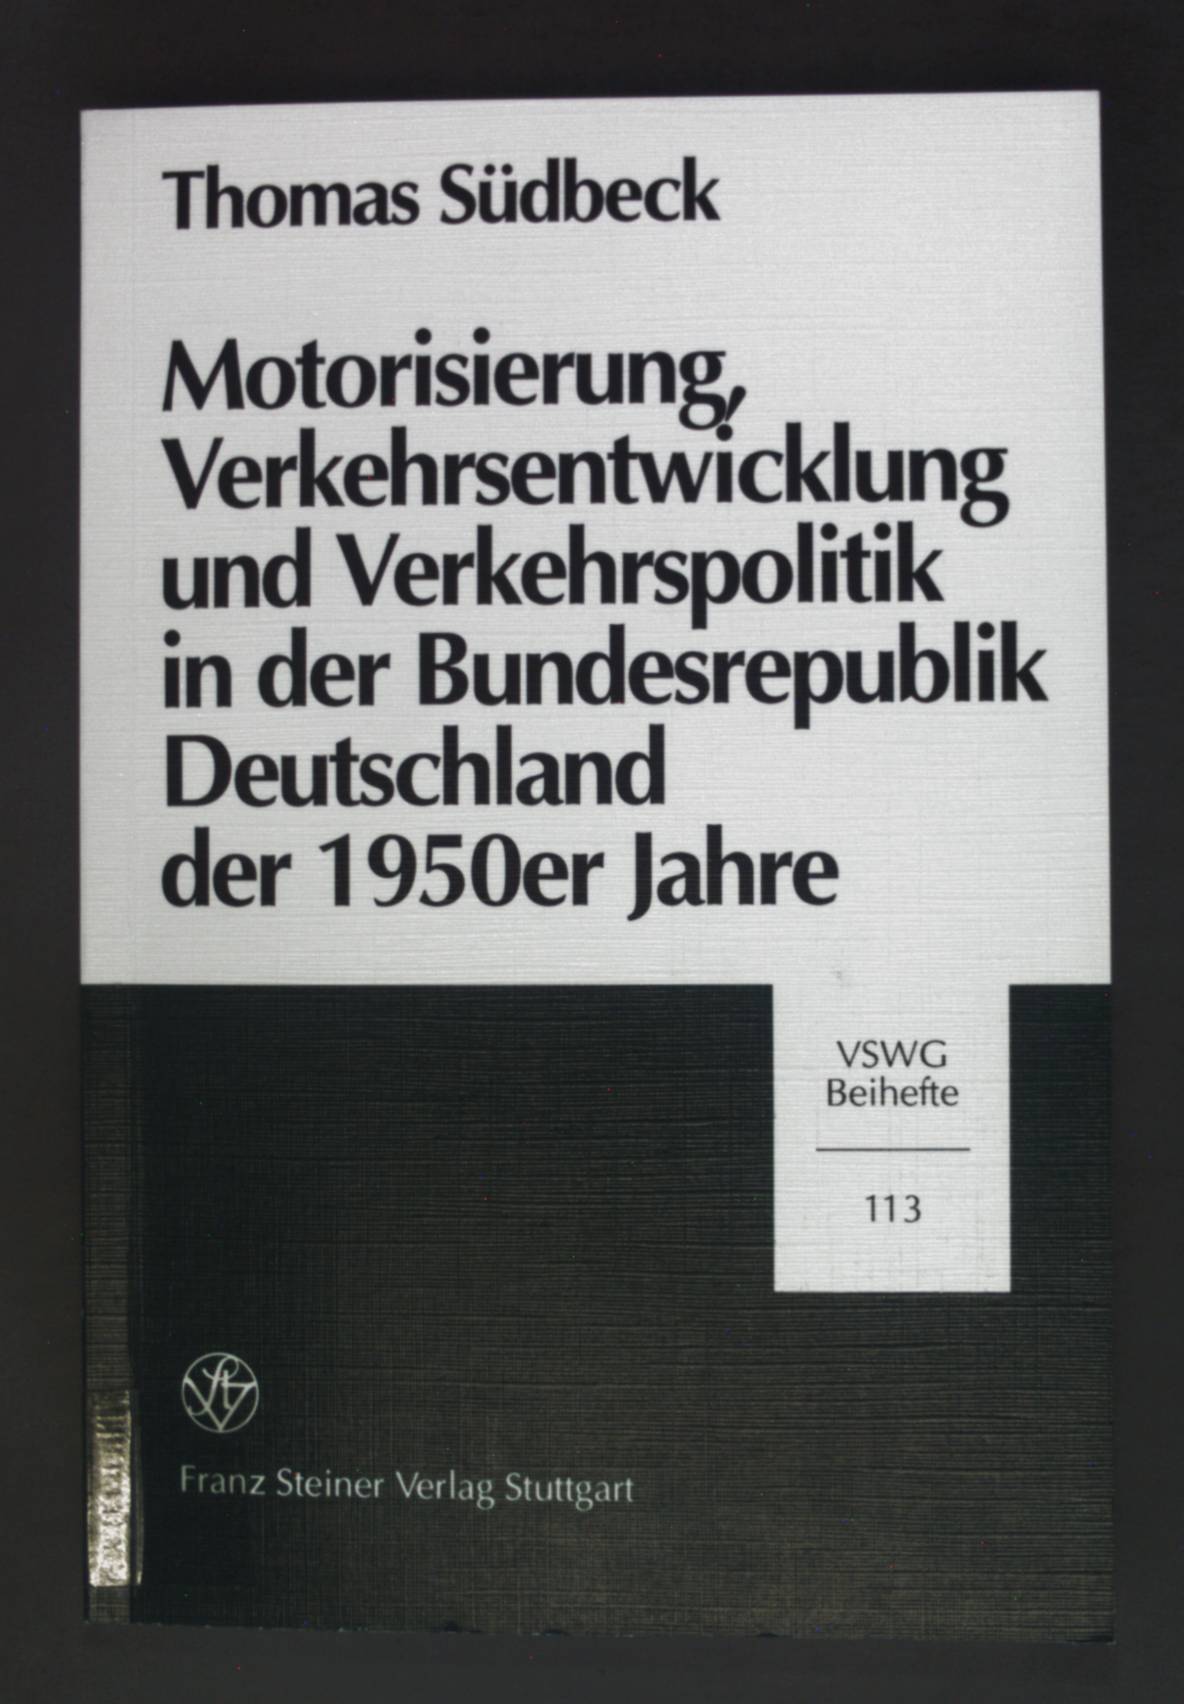 Motorisierung, Verkehrsentwicklung und Verkehrspolitik in der Bundesrepublik Deutschland der 1950er Jahre